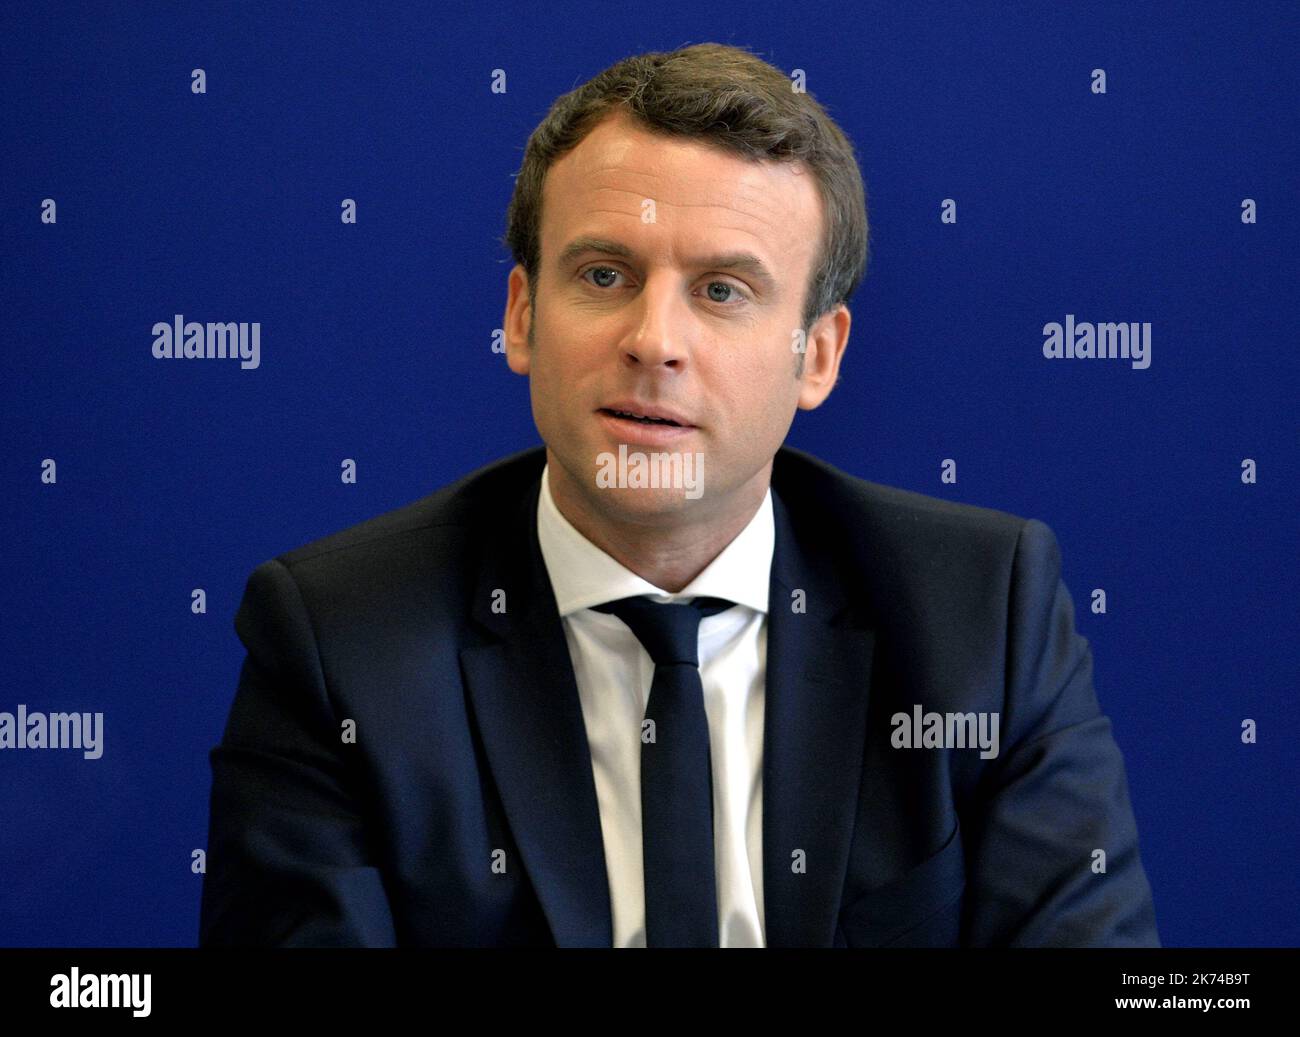 Candidato alle elezioni presidenziali francesi per le en Marche ! Movimento, Emmanuel Macron incontra il giornalista a Parigi il 27 aprile 2017 Foto Stock